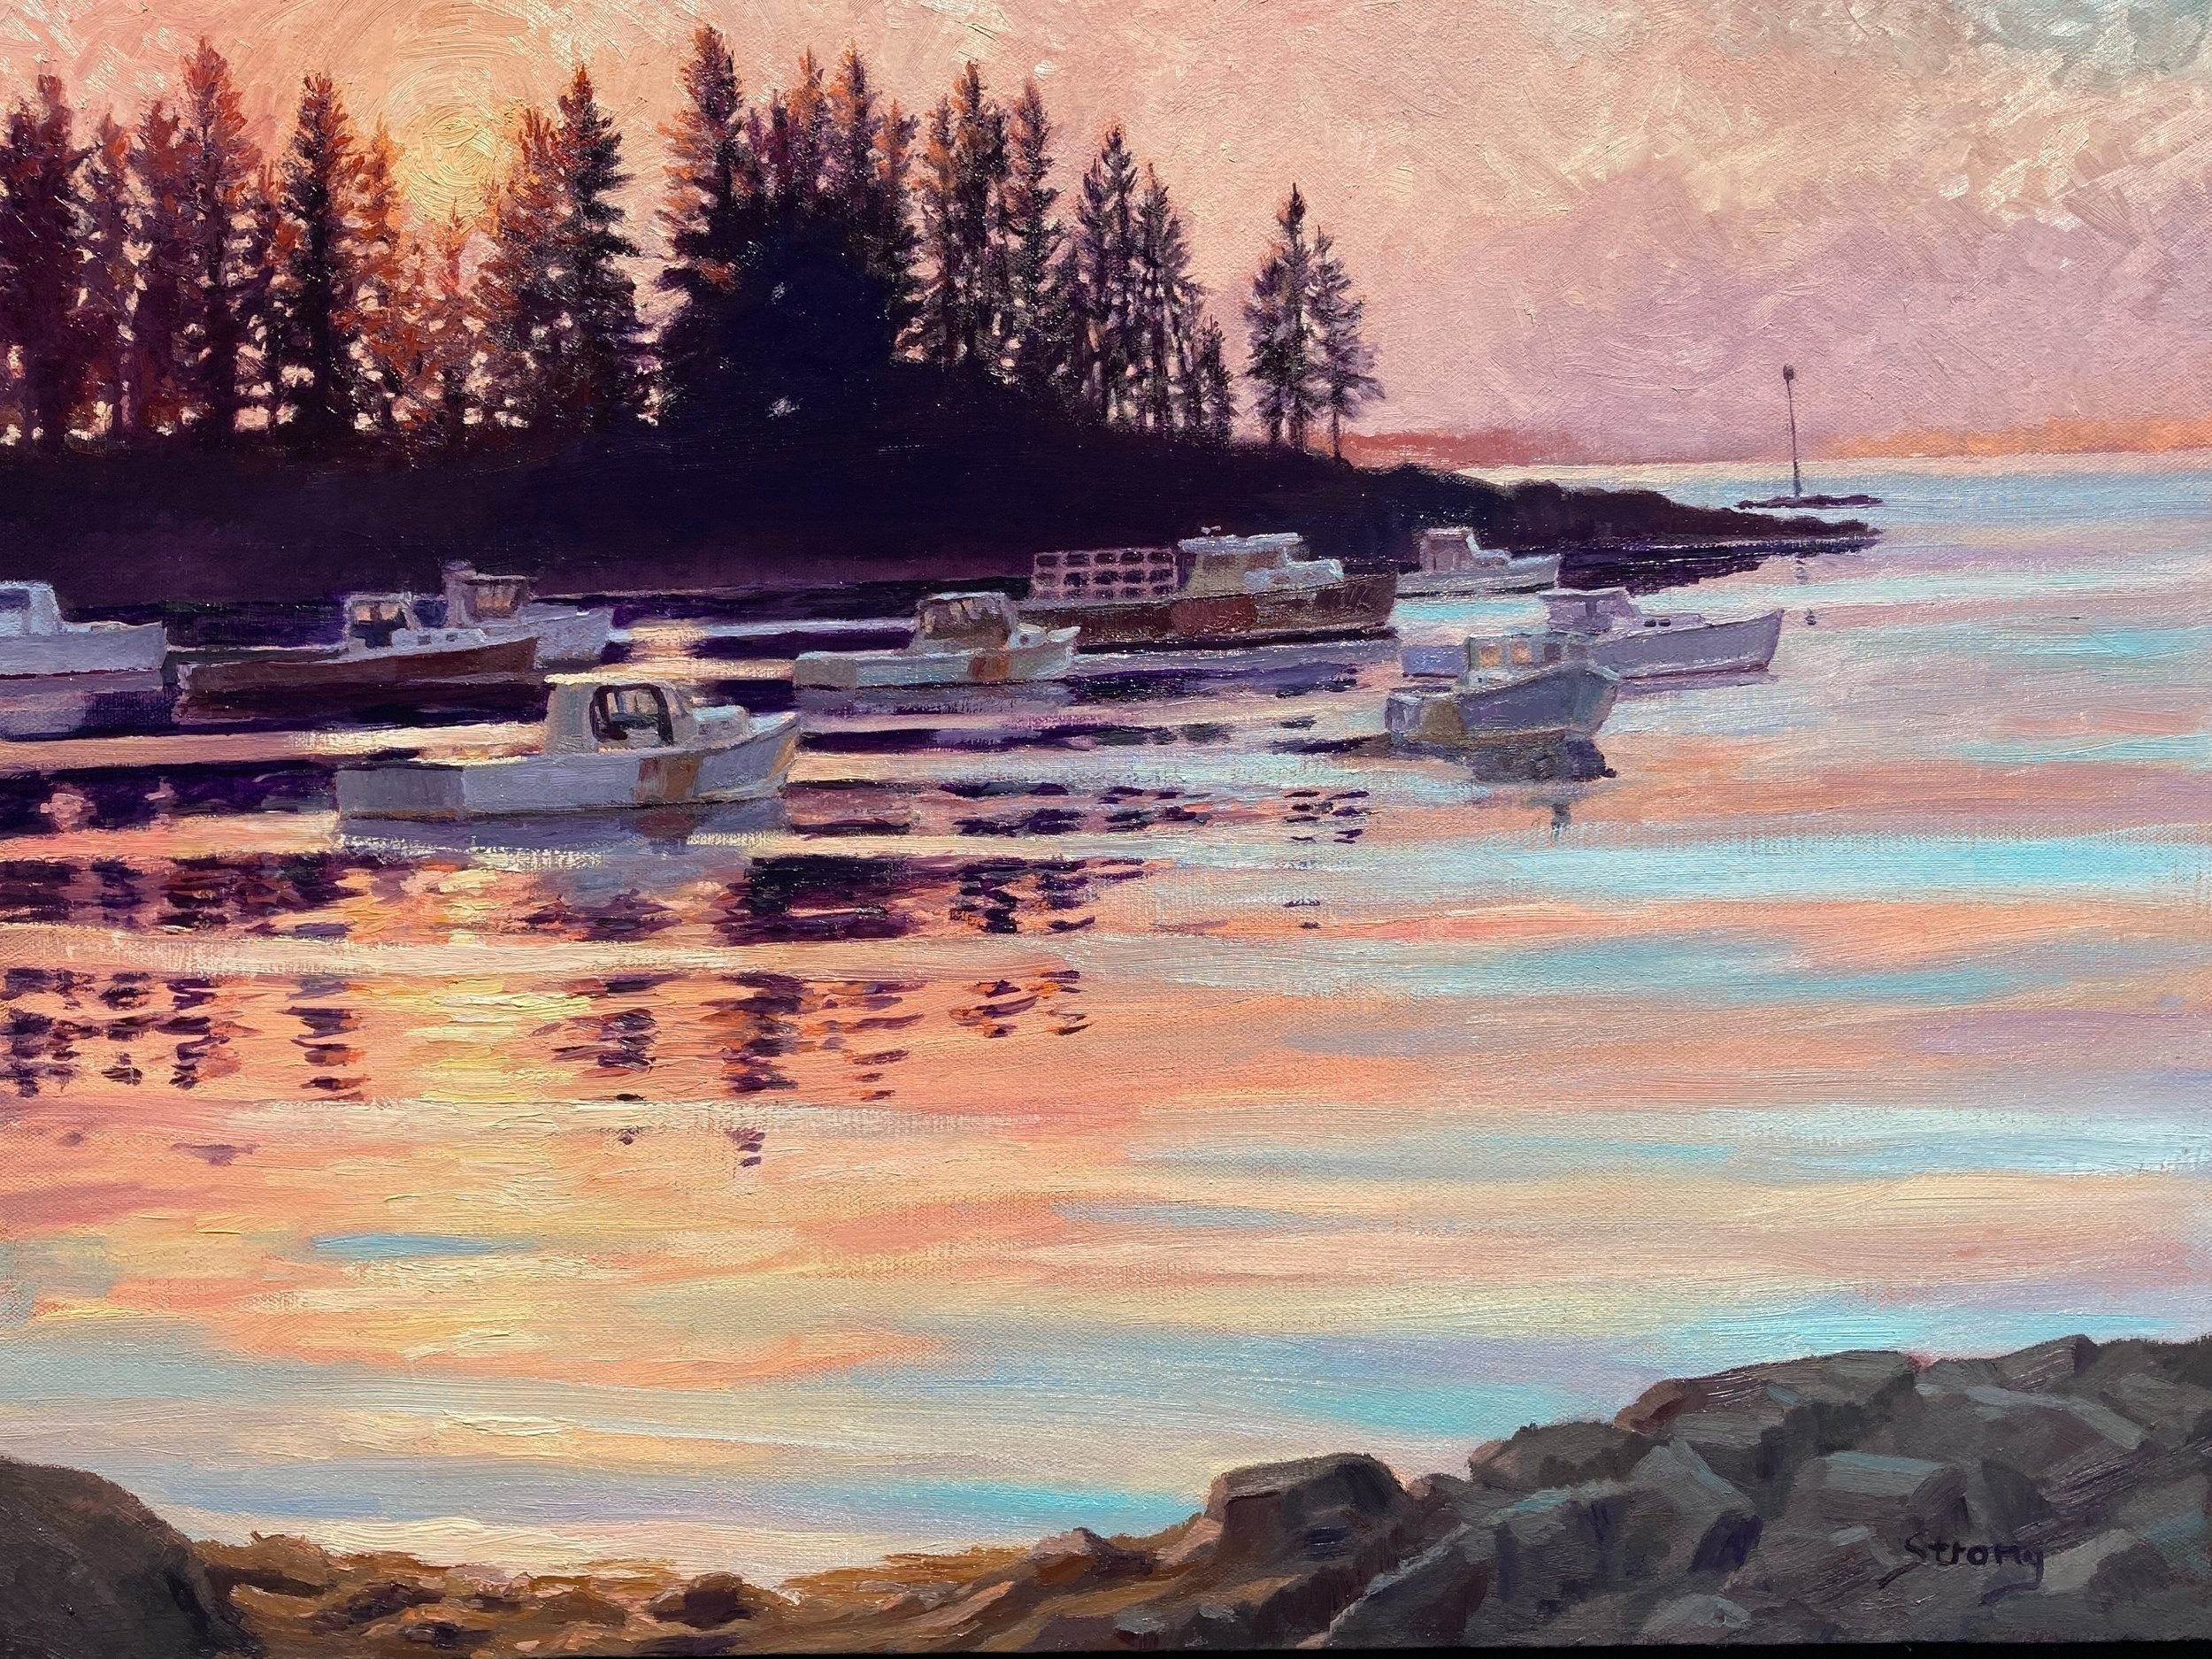 "Sunrise over Owls Head", 18' x 24", oil on canvas